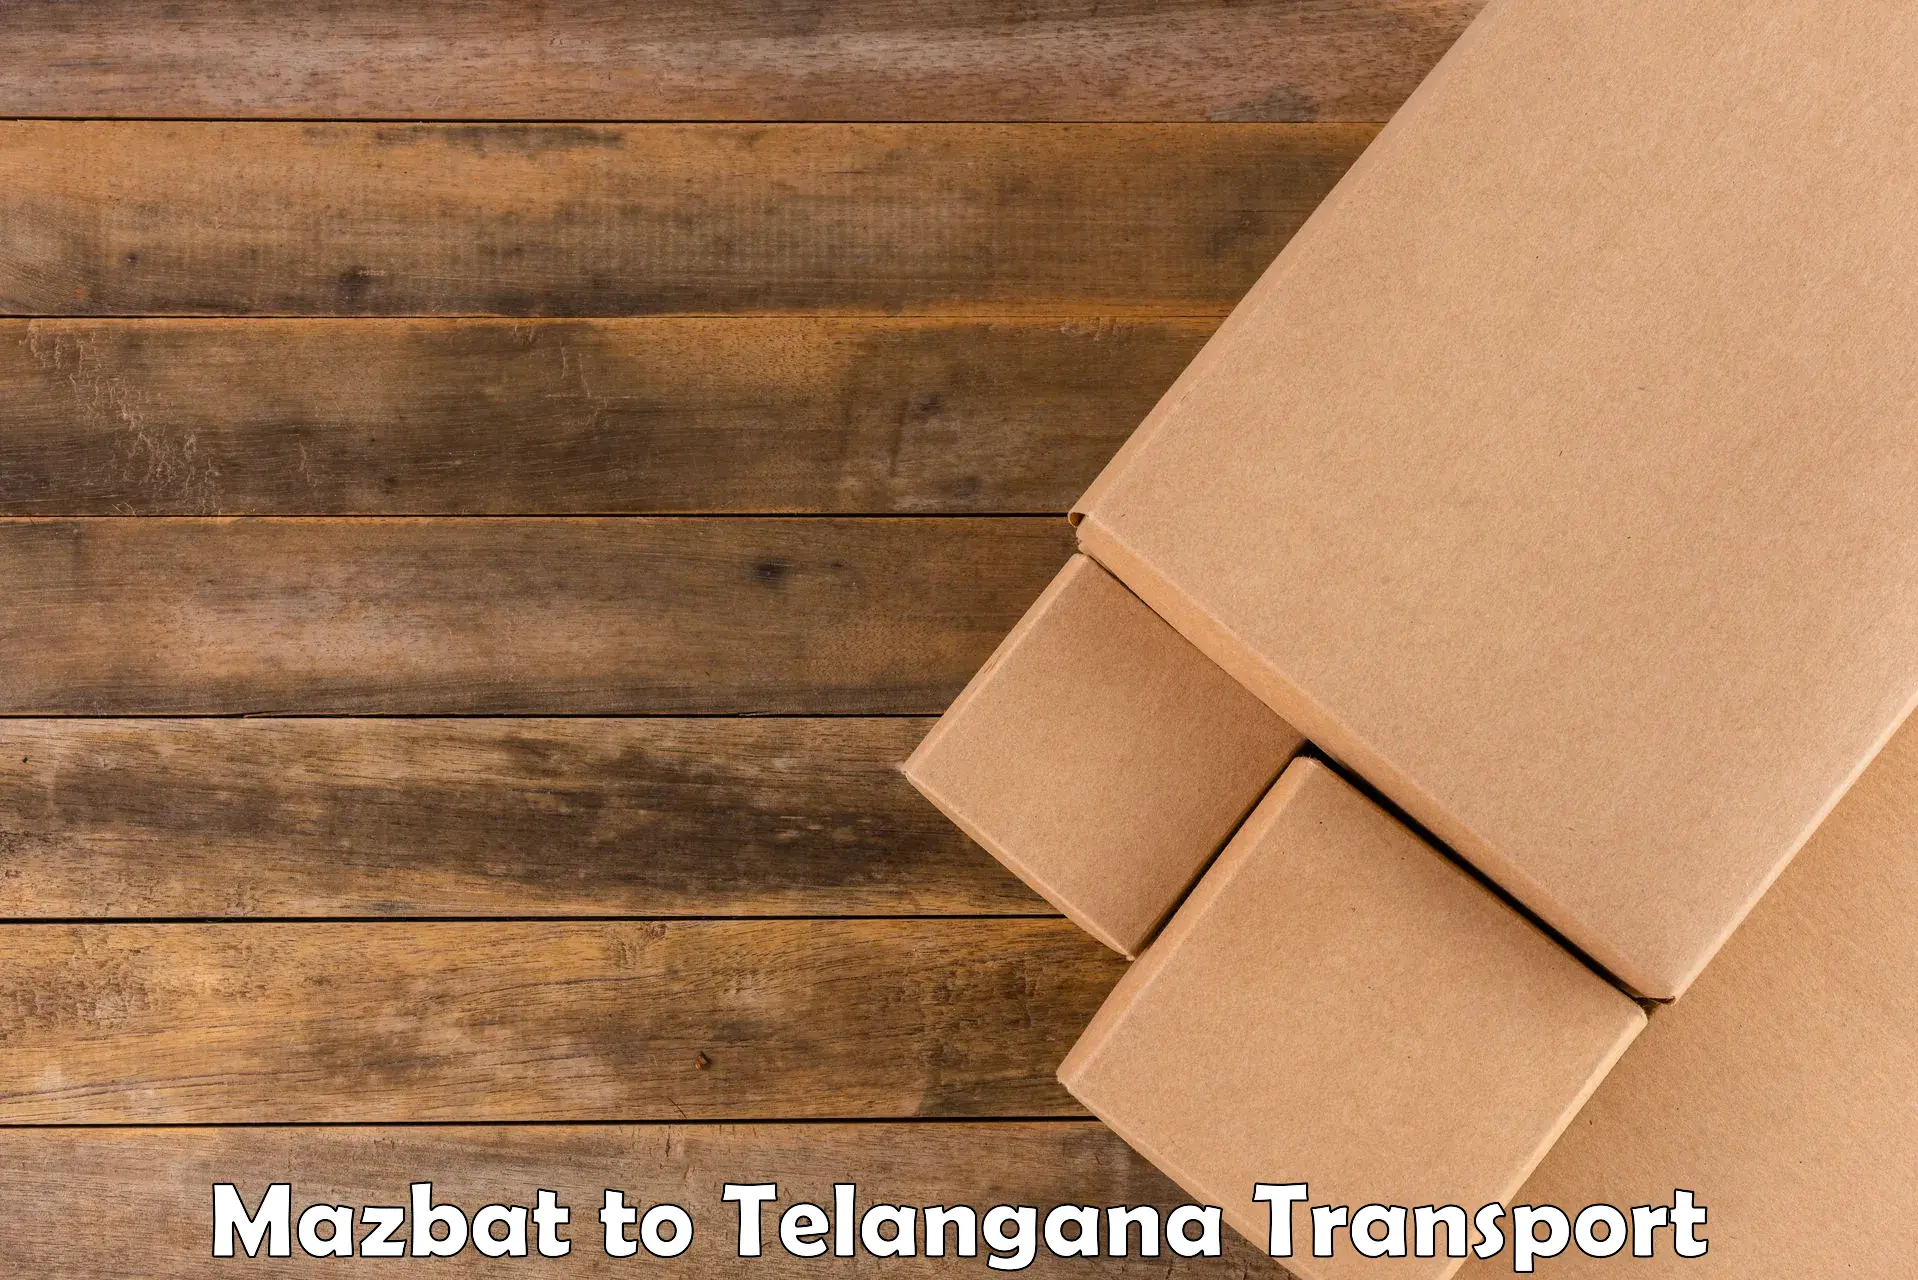 Nearest transport service Mazbat to Sultanabad